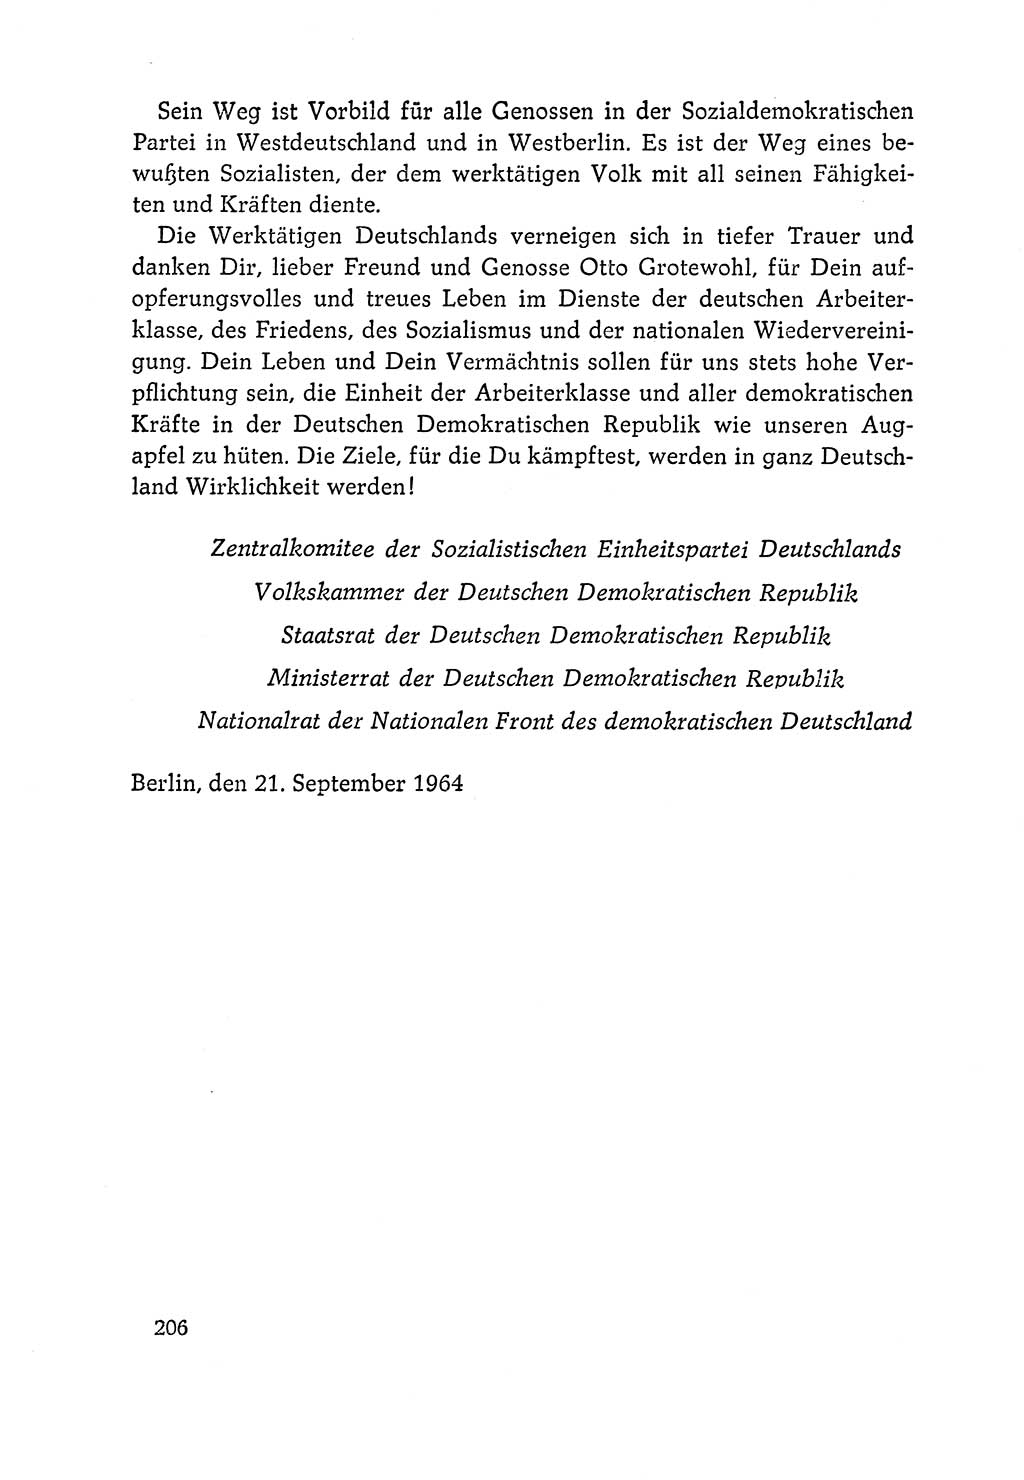 Dokumente der Sozialistischen Einheitspartei Deutschlands (SED) [Deutsche Demokratische Republik (DDR)] 1964-1965, Seite 206 (Dok. SED DDR 1964-1965, S. 206)